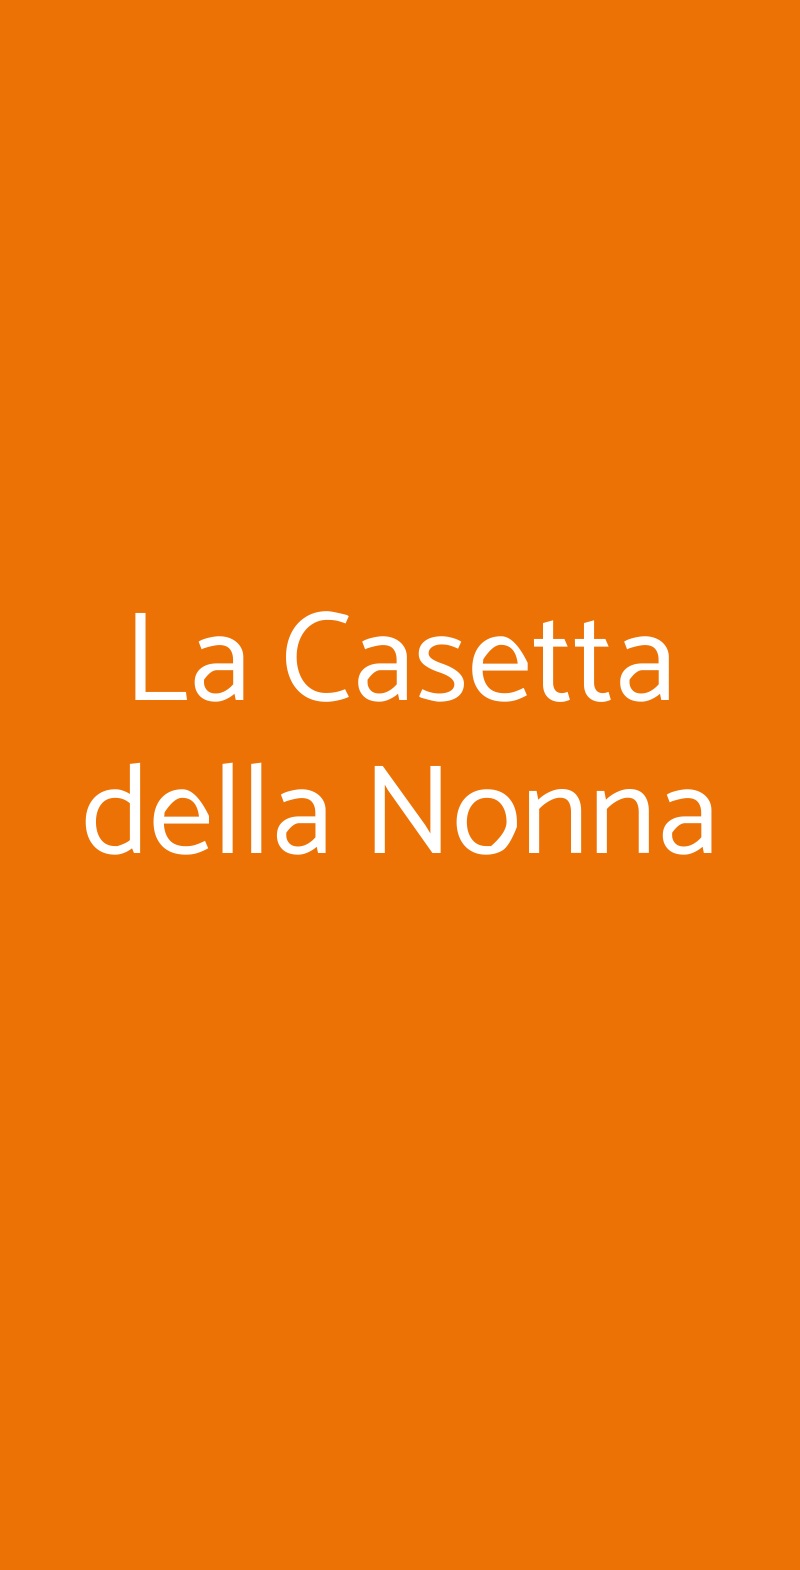 La Casetta Della Nonna Palermo menù 1 pagina